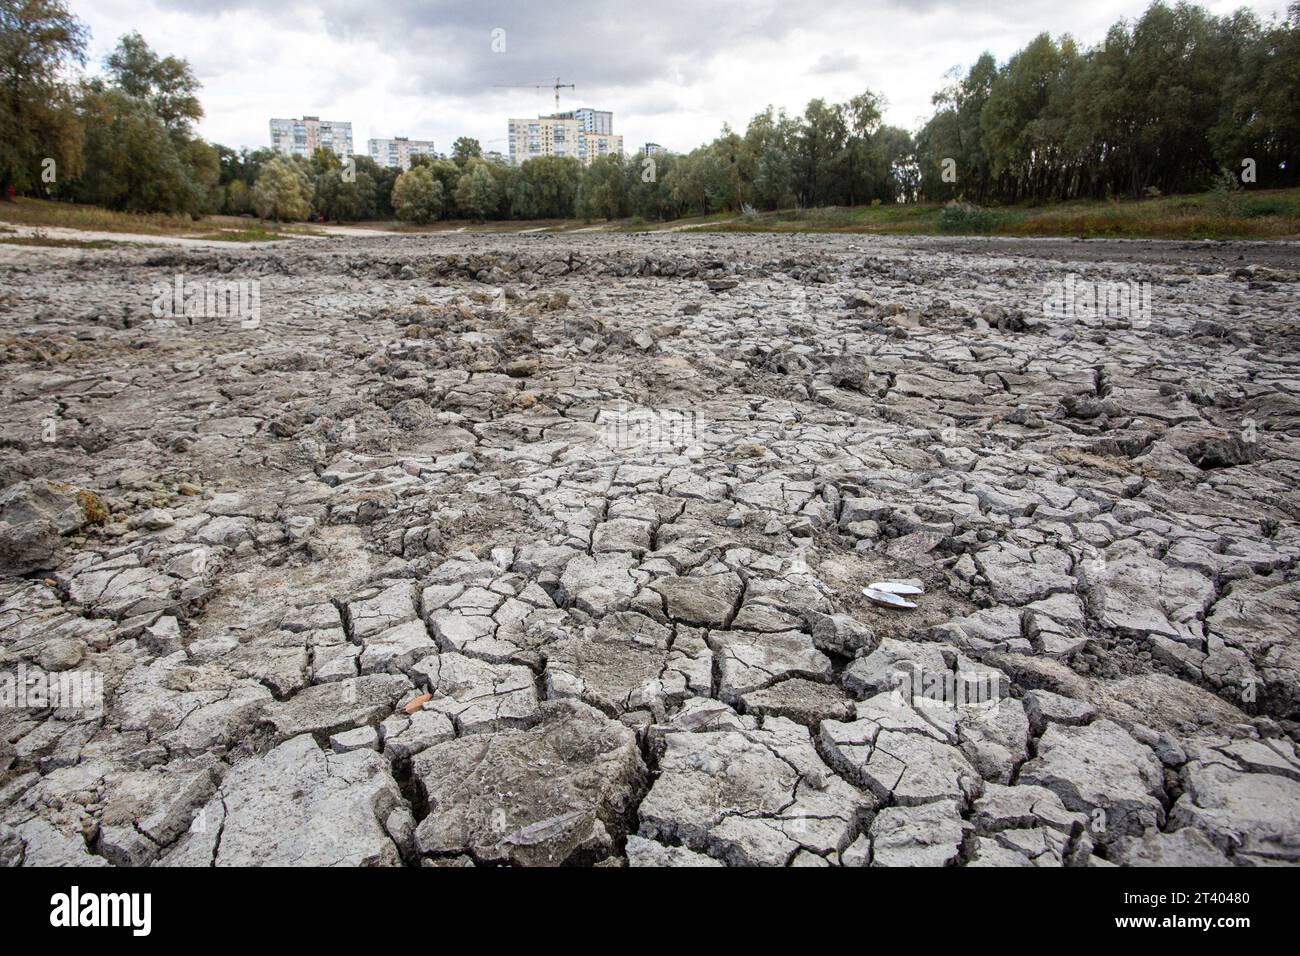 La vista del Lago Blu essiccato nella parte occidentale di Kiev, disastro ambientale dopo diversi anni di autenticità che non hanno finanziato l'acqua, l'approvvigionamento idrico Foto Stock